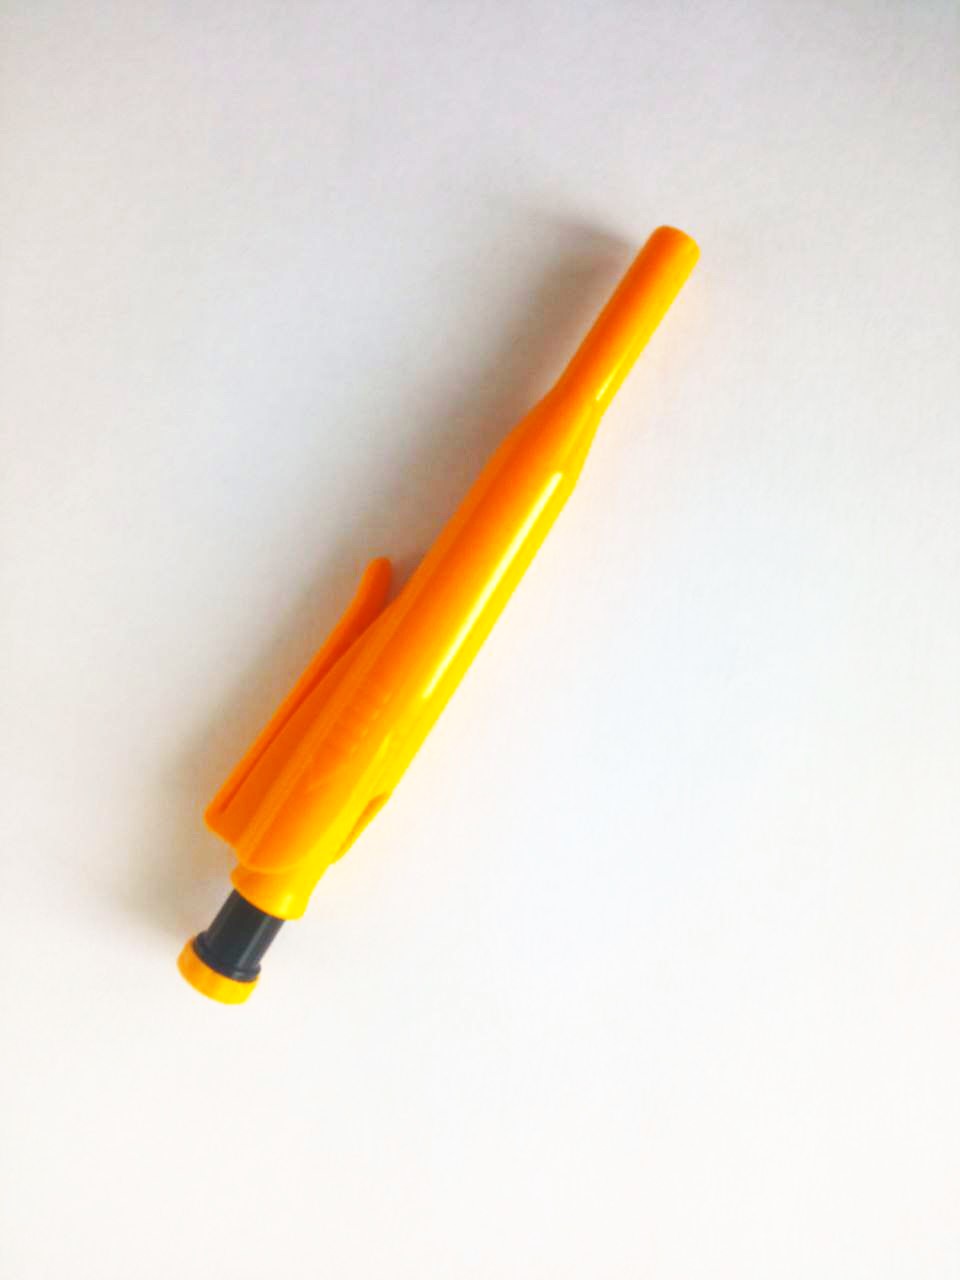 Строительный карандаш с колпачком, точилкой и дополнительном комплектом из 6 стержней